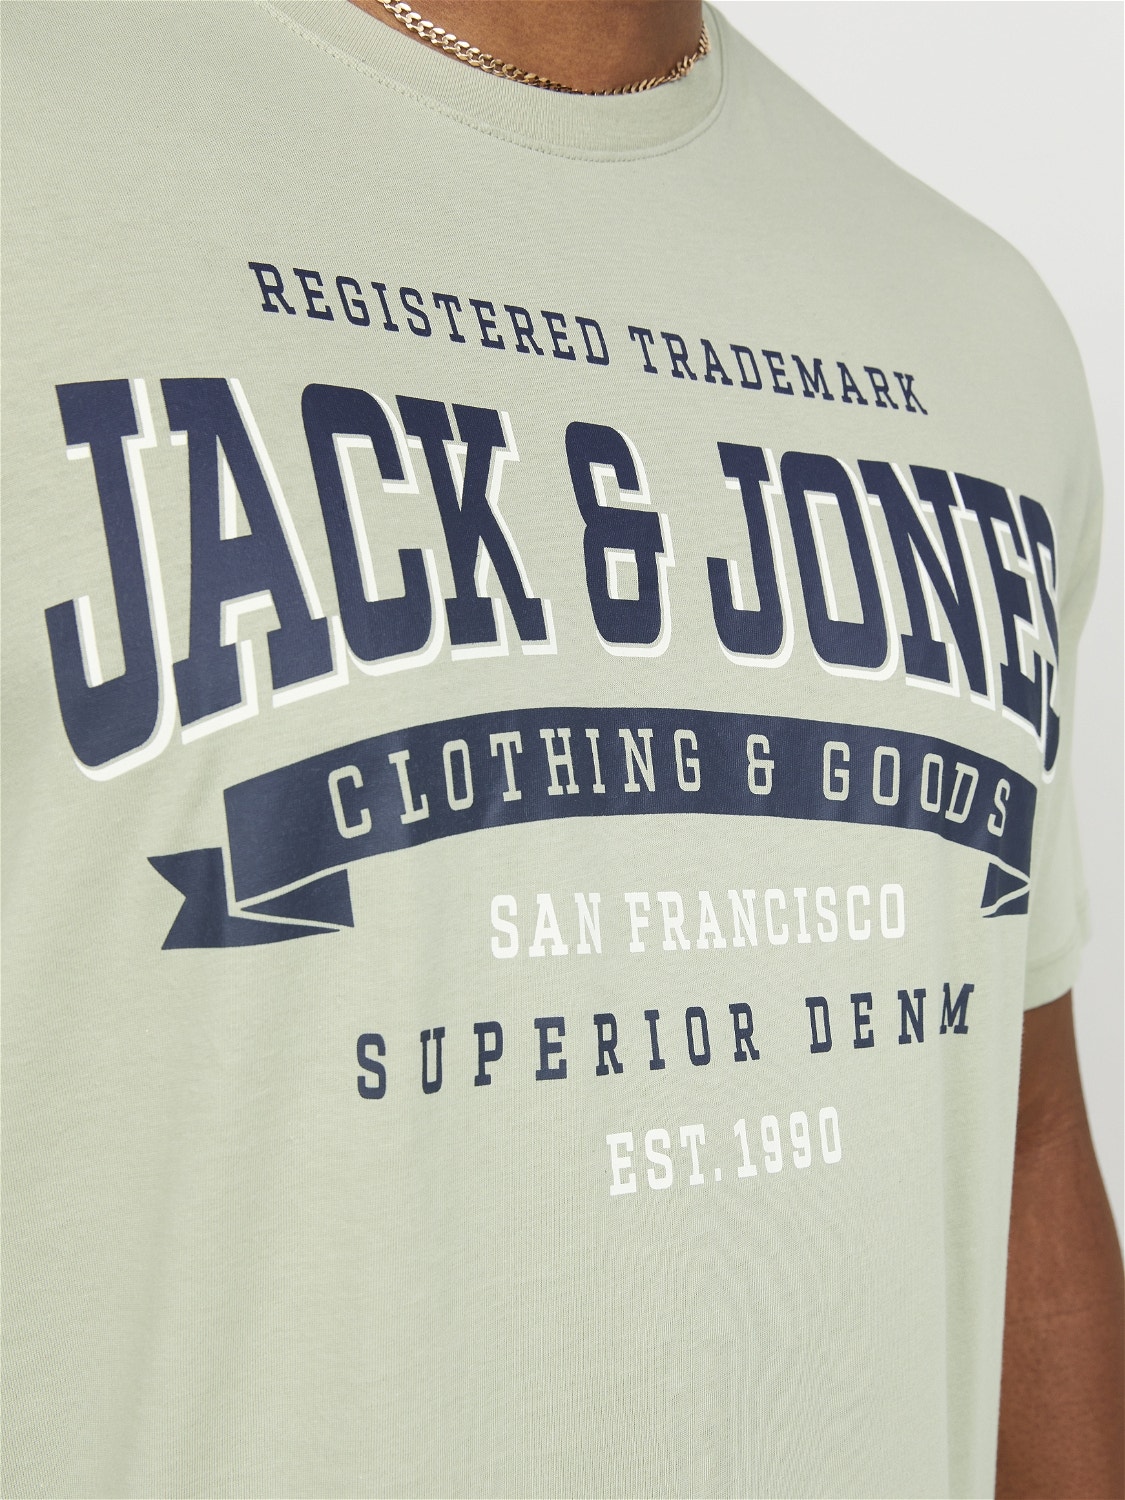 Jack & Jones Plus Size Logotipas Marškinėliai -Desert Sage - 12243611